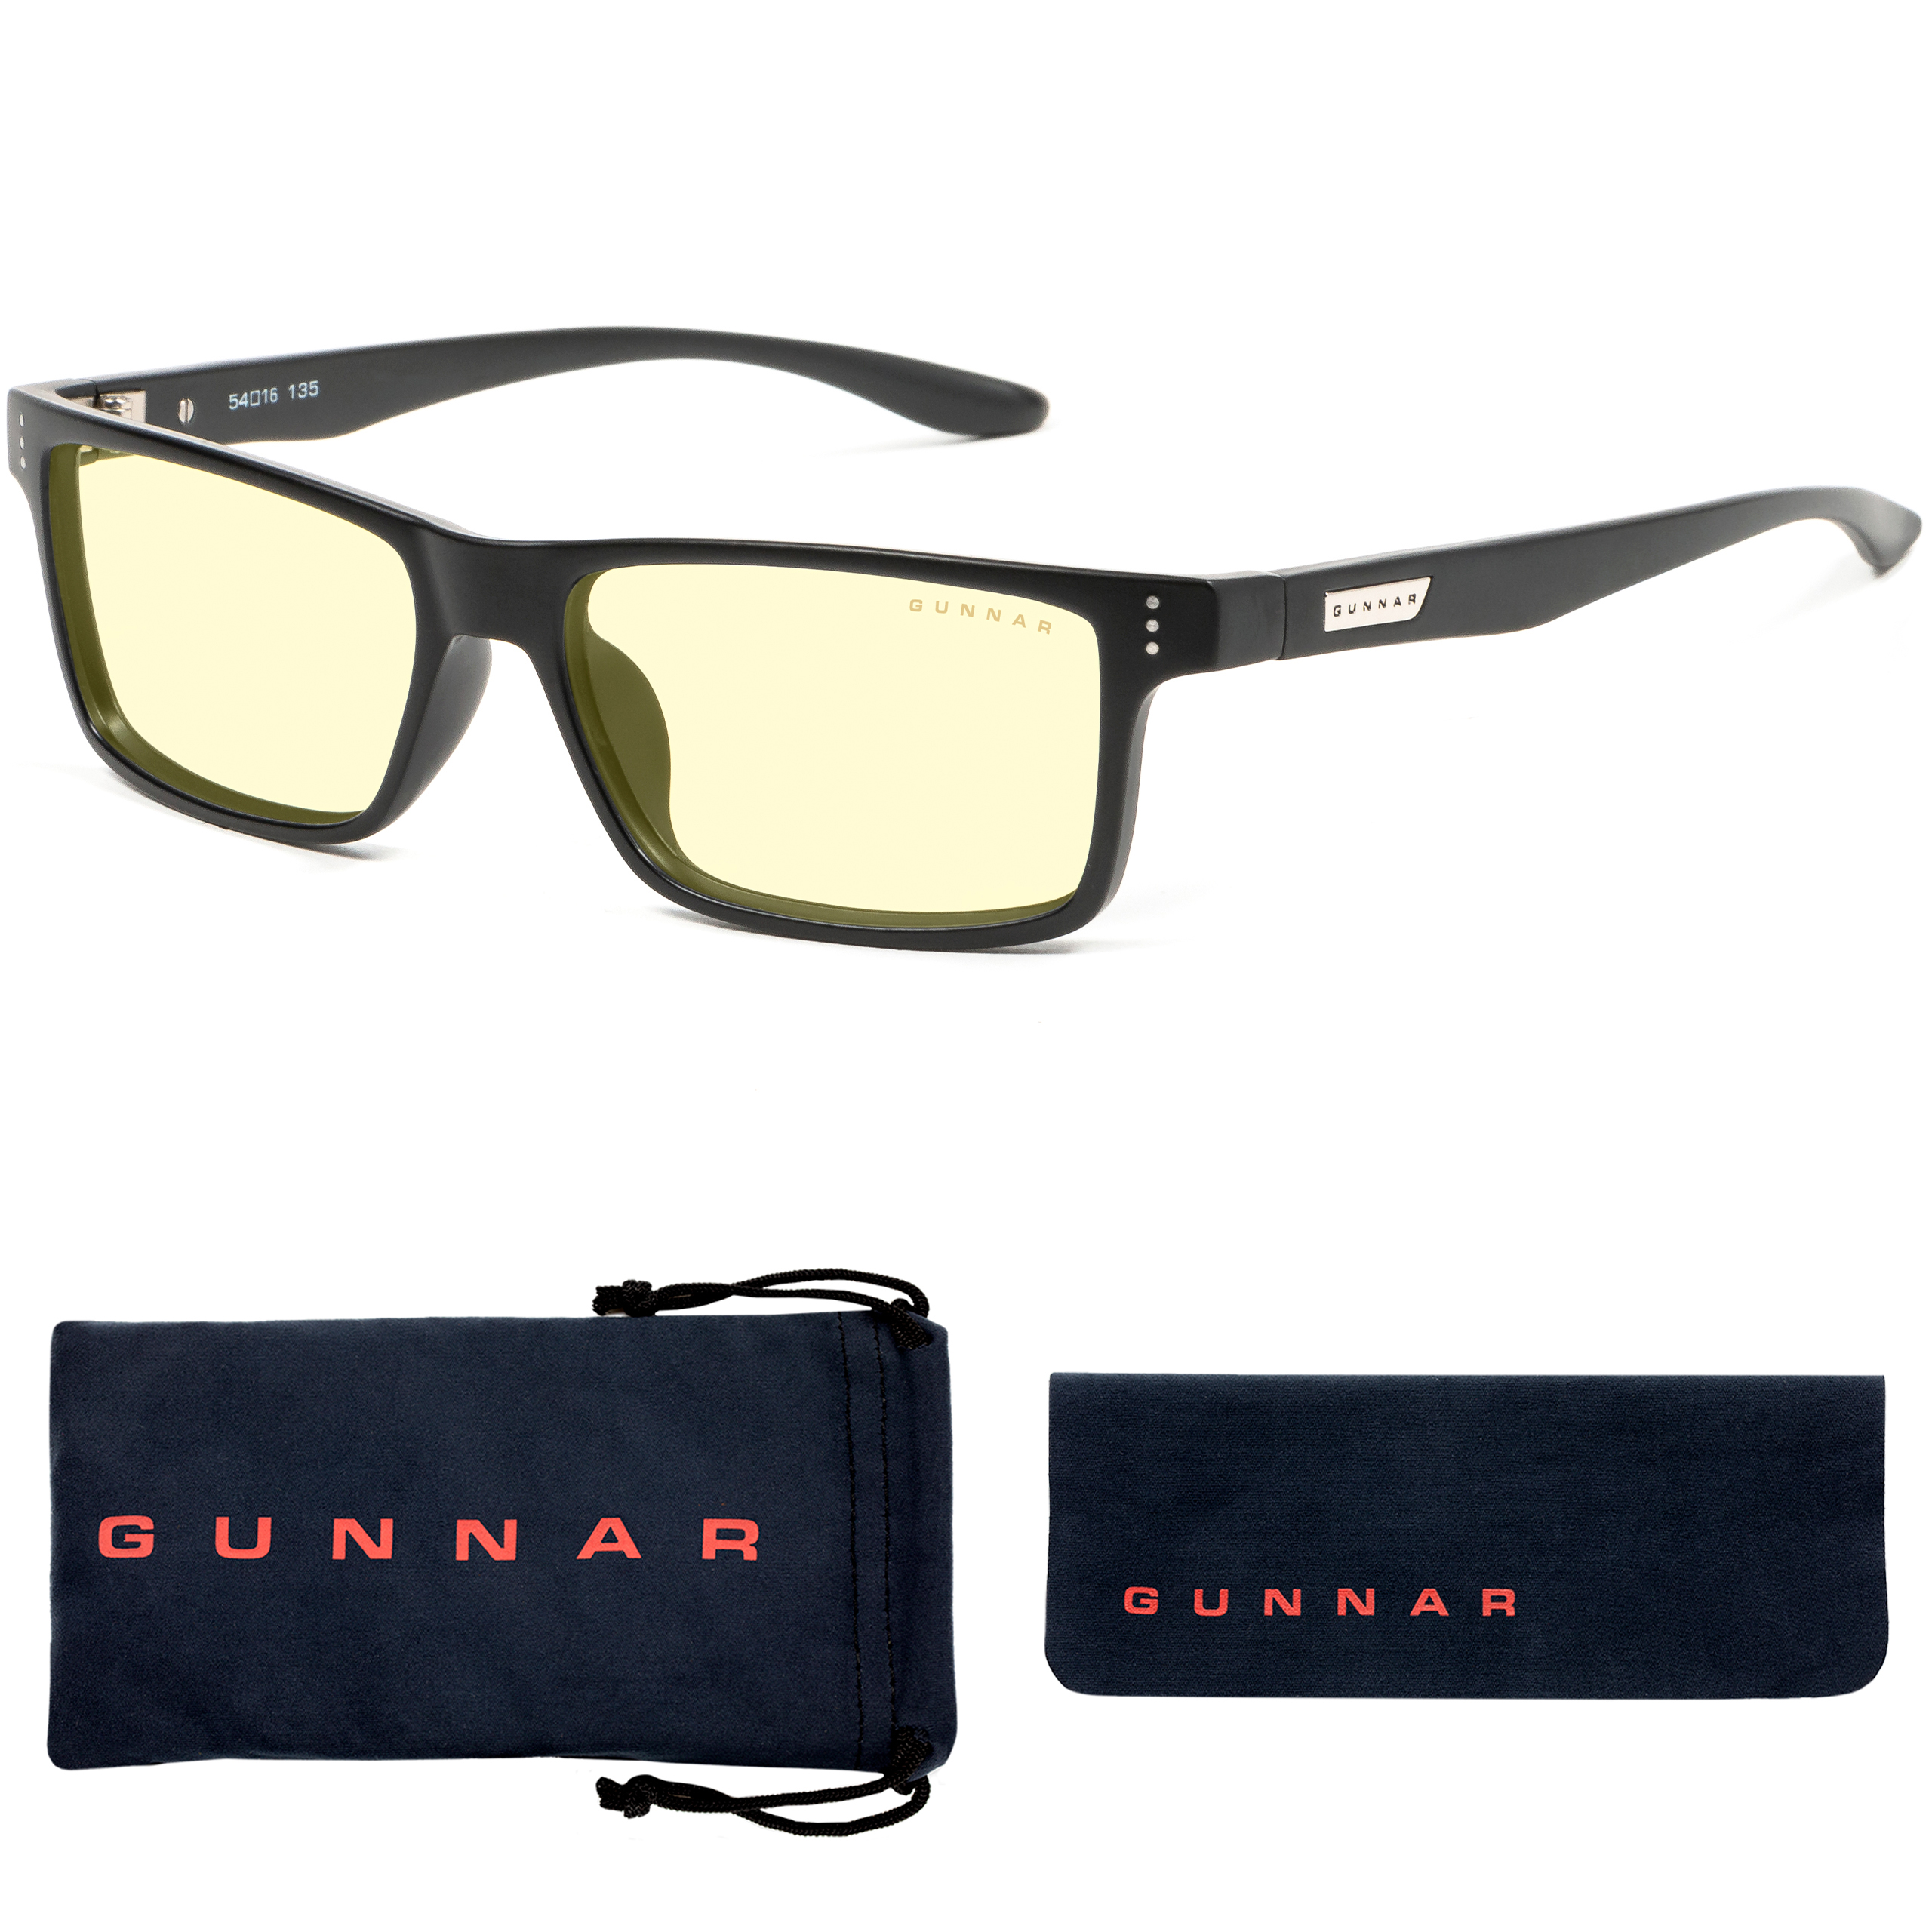 GUNNAR Vertex, Amber Onyx Premium, UV-Schutz, Gaming Tönung, Rahmen, Blaulichtfilter, Brille